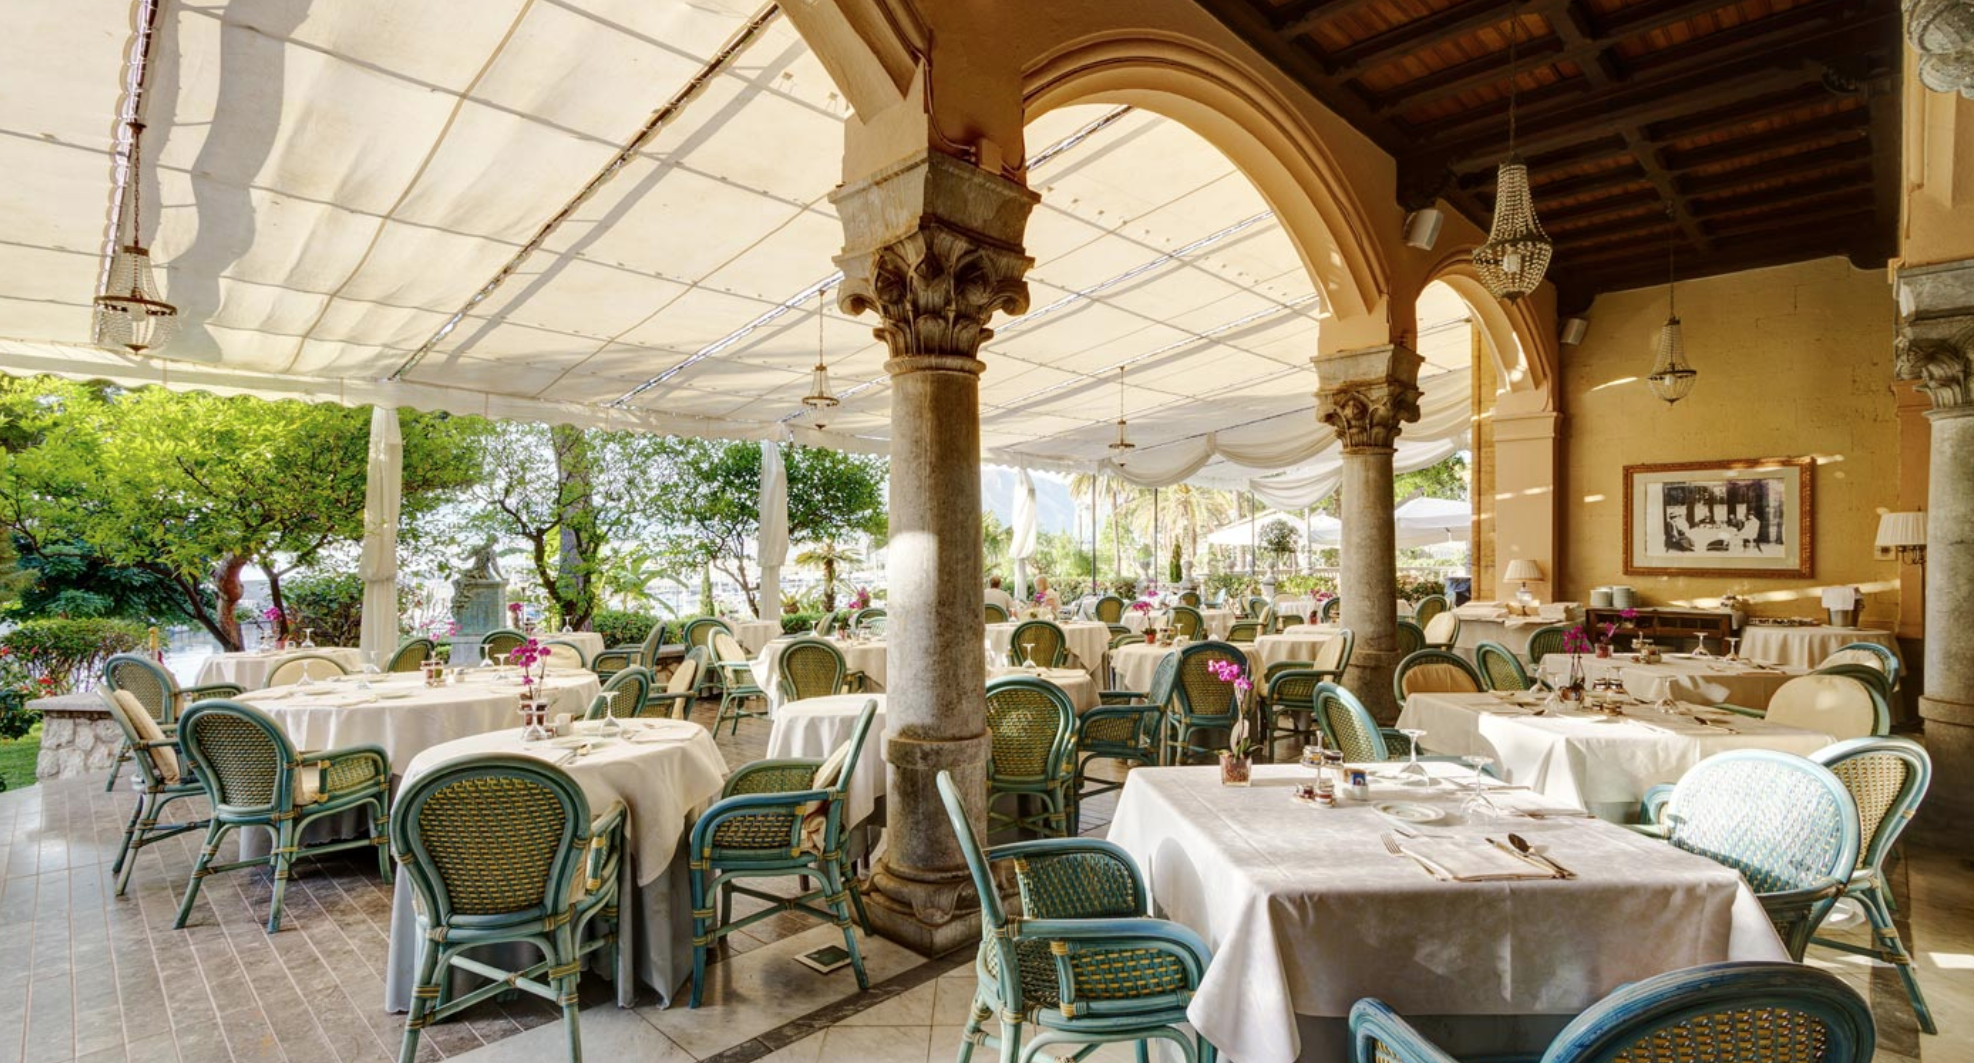 Grand Hotel Villa Igiea - Alberghi - Dove Dormire - Portale del ...